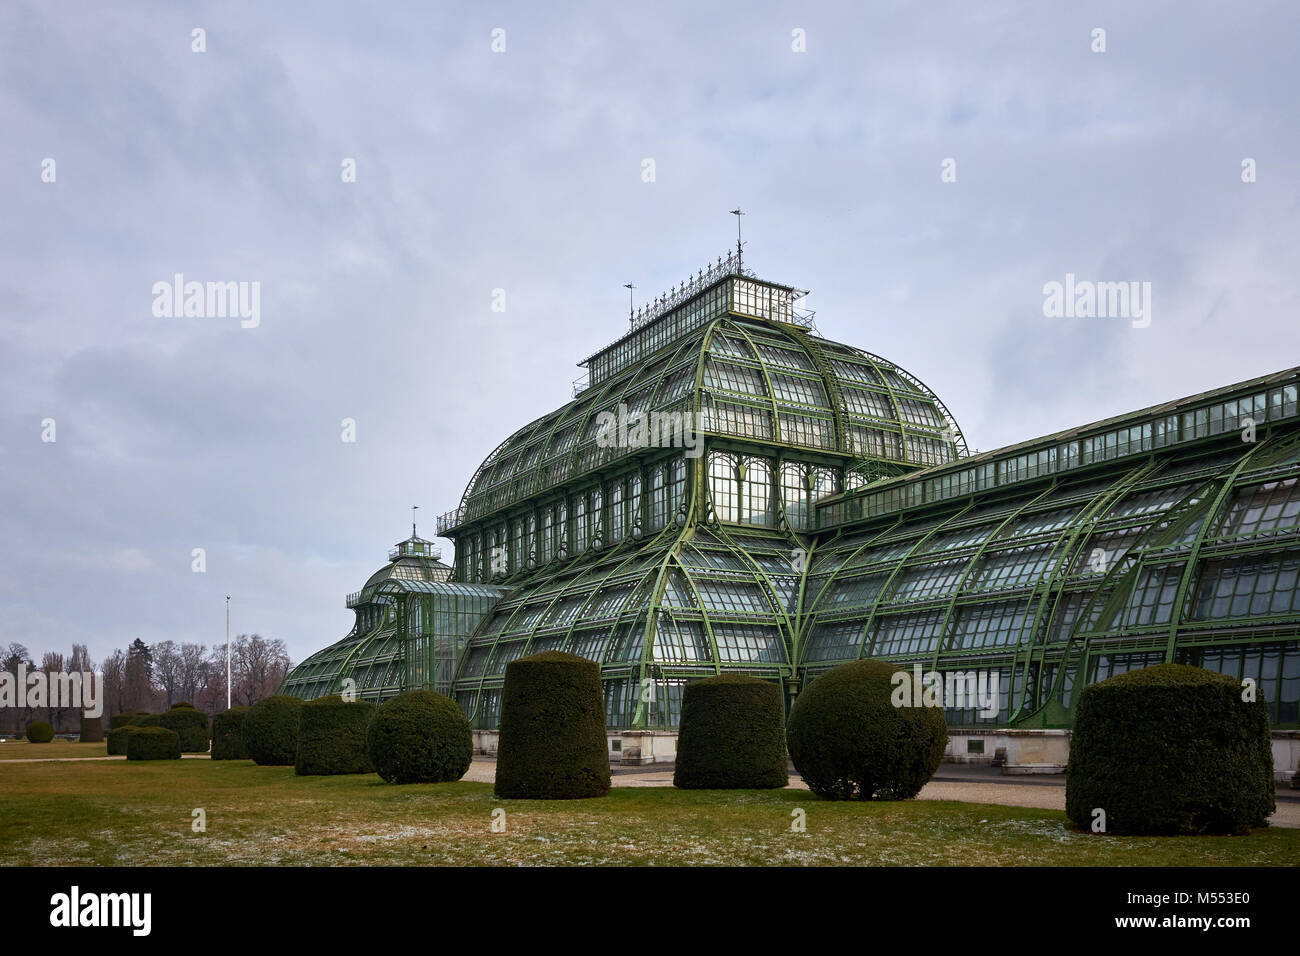 Wien, Österreich - 18. Februar 2018: Das Palmenhaus Schönbrunn/Schönbrunn Palm House auf dem Gelände des Schlosses Schönbrunn Park, Wien an einem kalten Tag Stockfoto